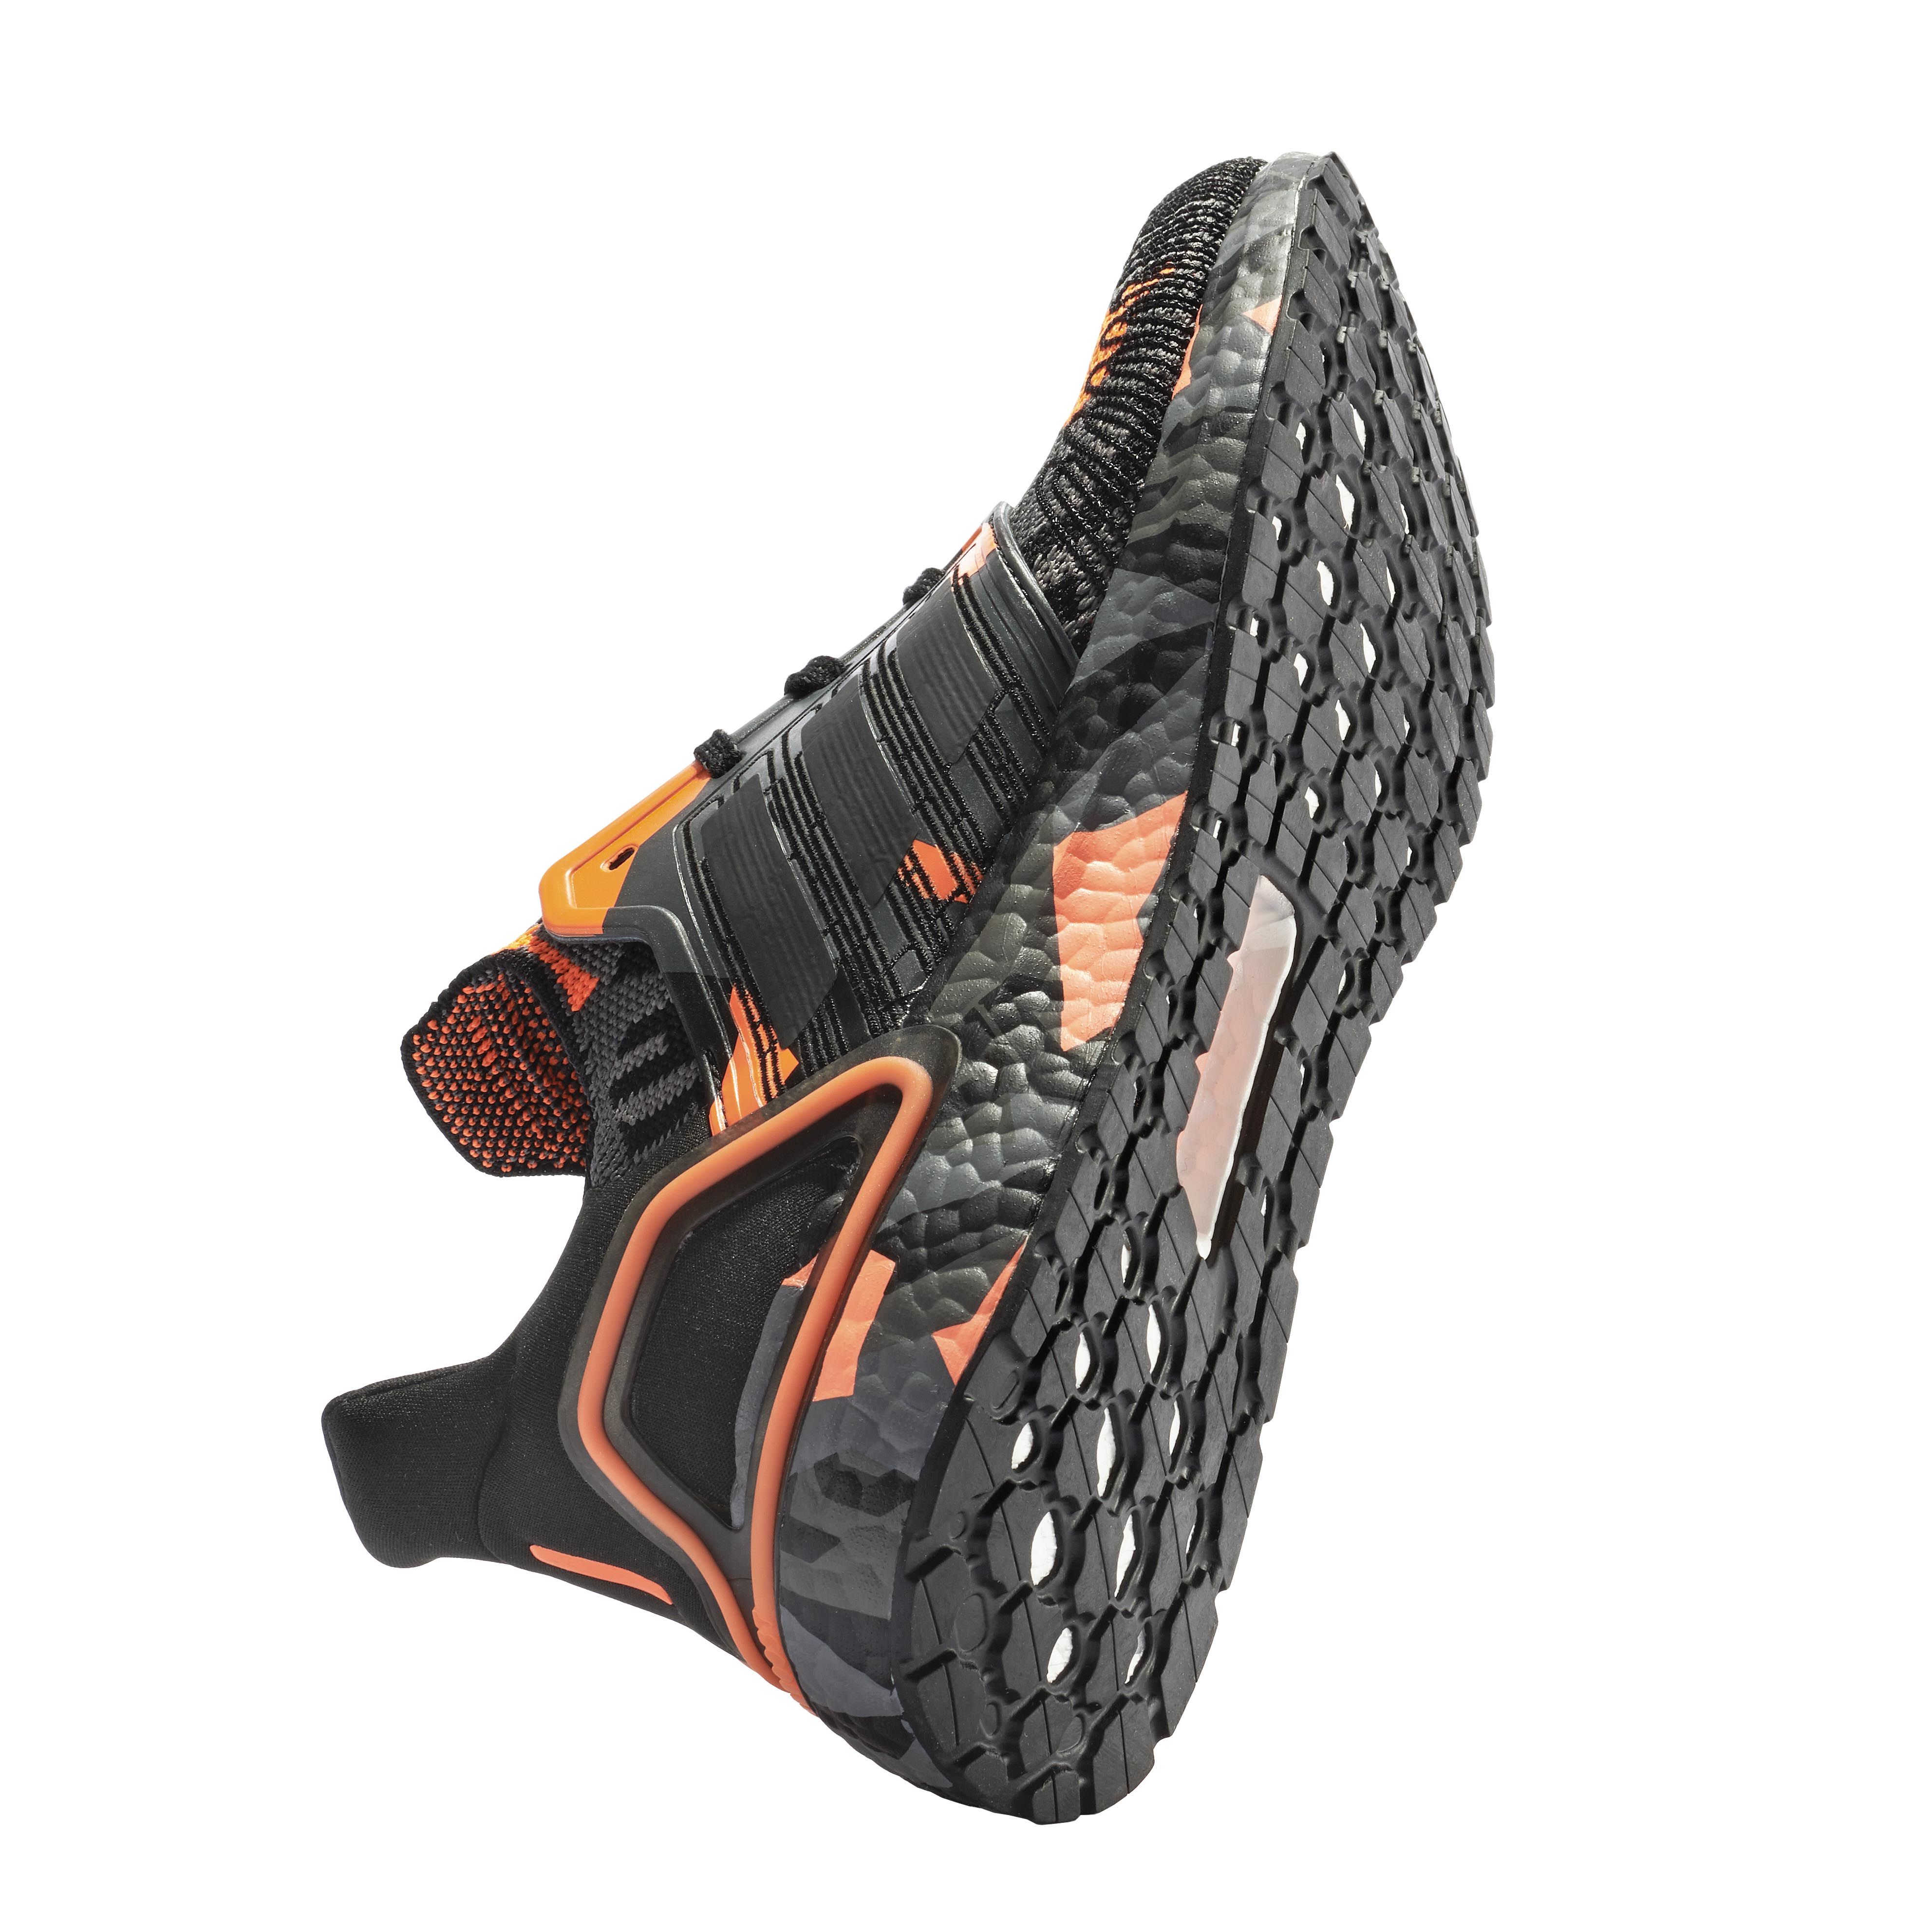 سنابل السلام توصيل Best running shoes 2020 - Adidas Ultraboost 20 سنابل السلام توصيل